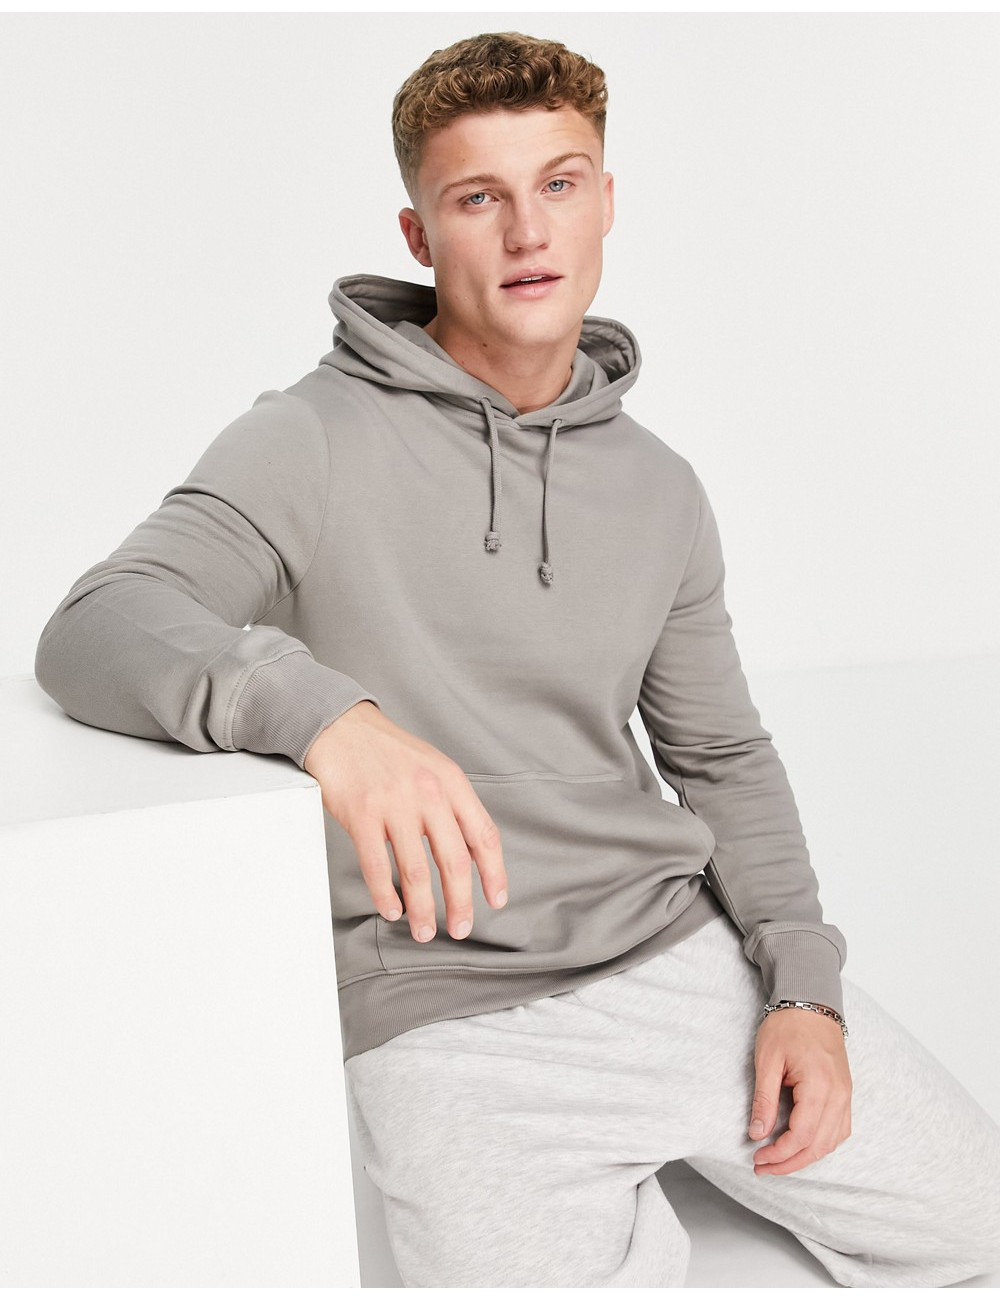 New Look hoodie in light grey